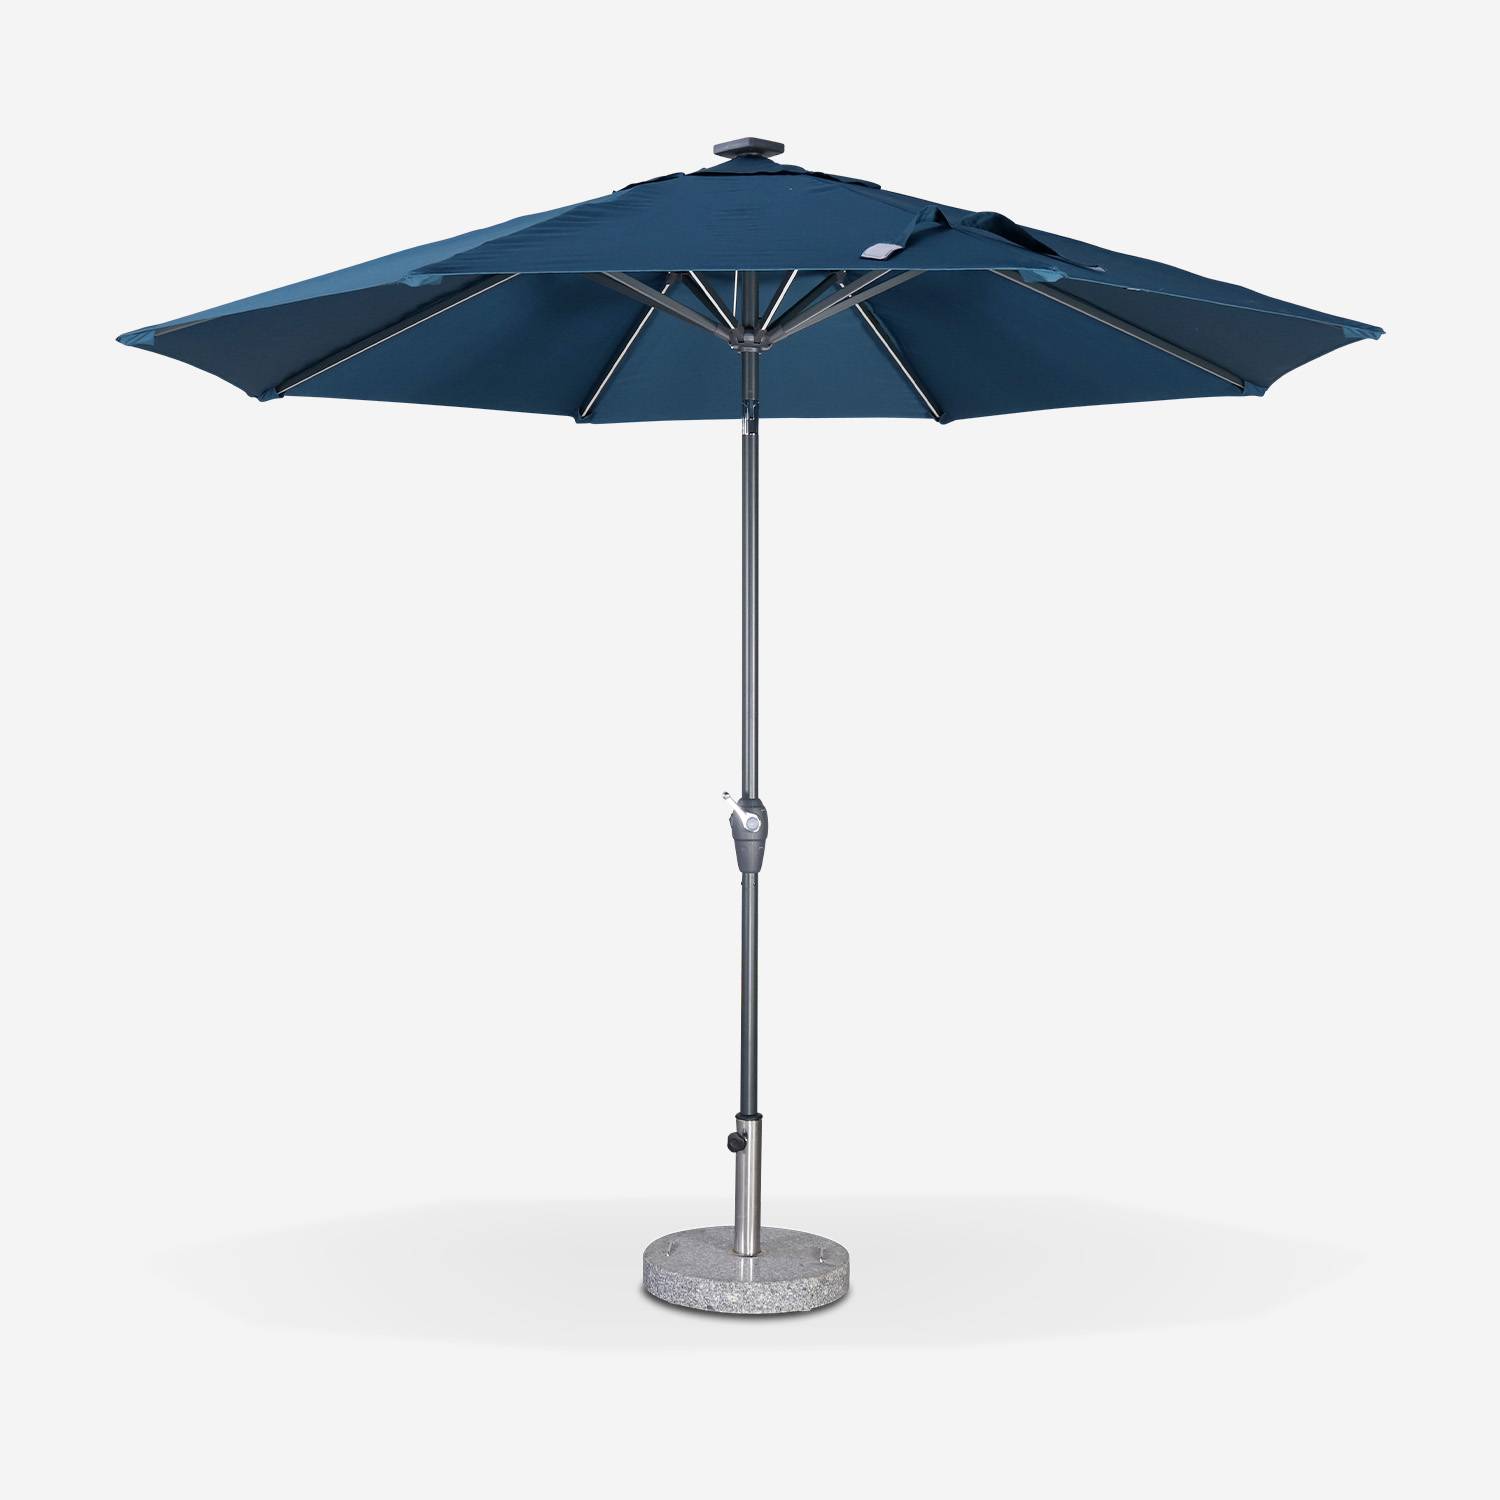 Ronde LED parasol  Ø 2,7m - Helios Donker turquoise - Stokparasol met geïntegreerde verlichting en hendel Photo1